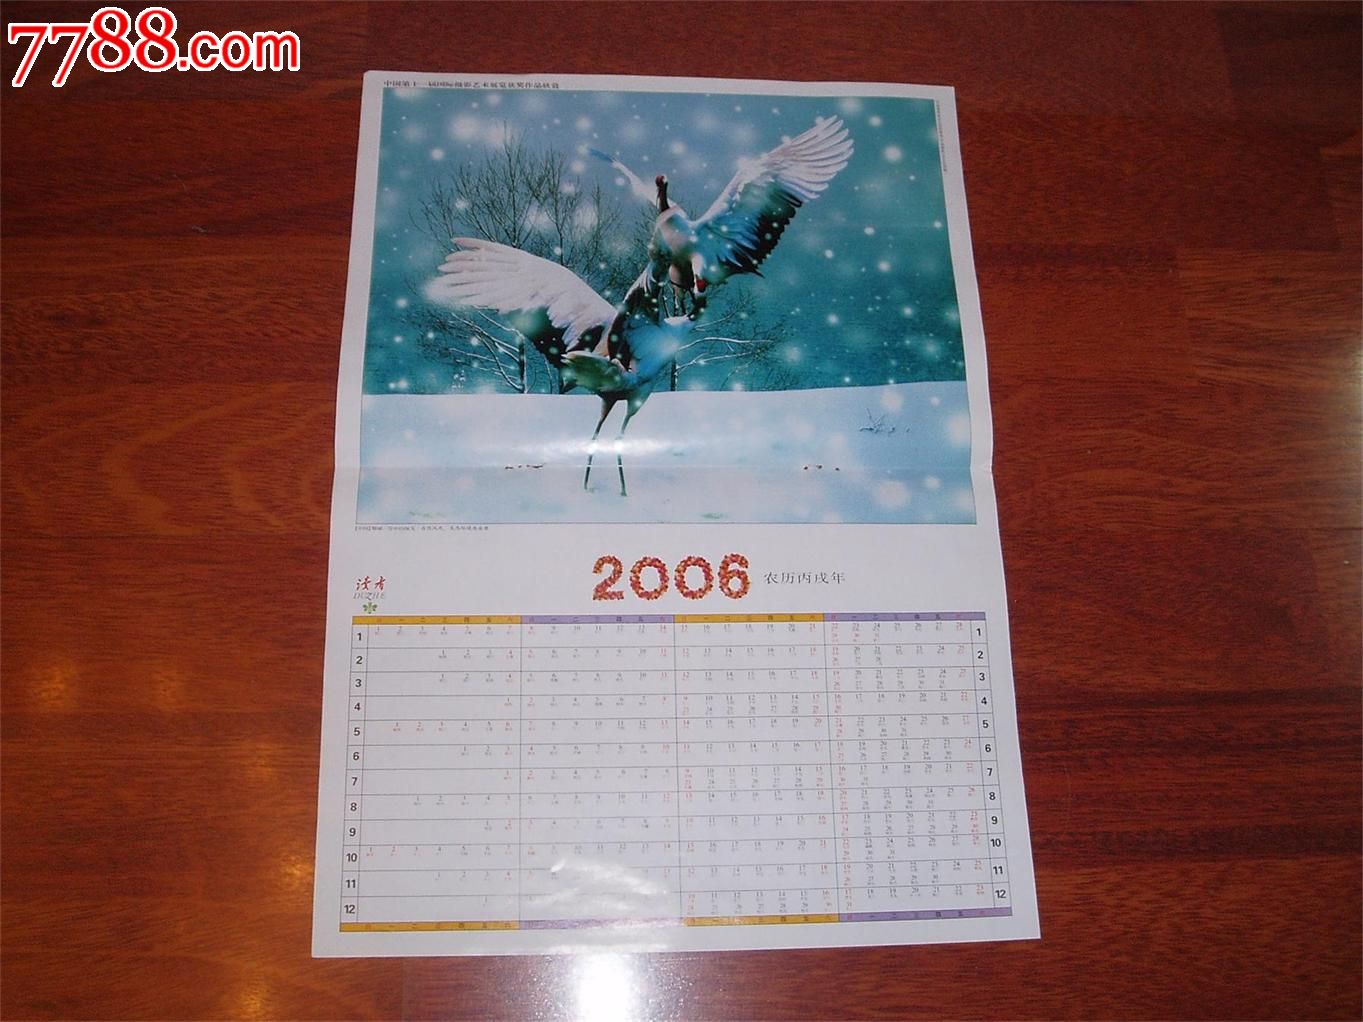 2006年日历全年图片